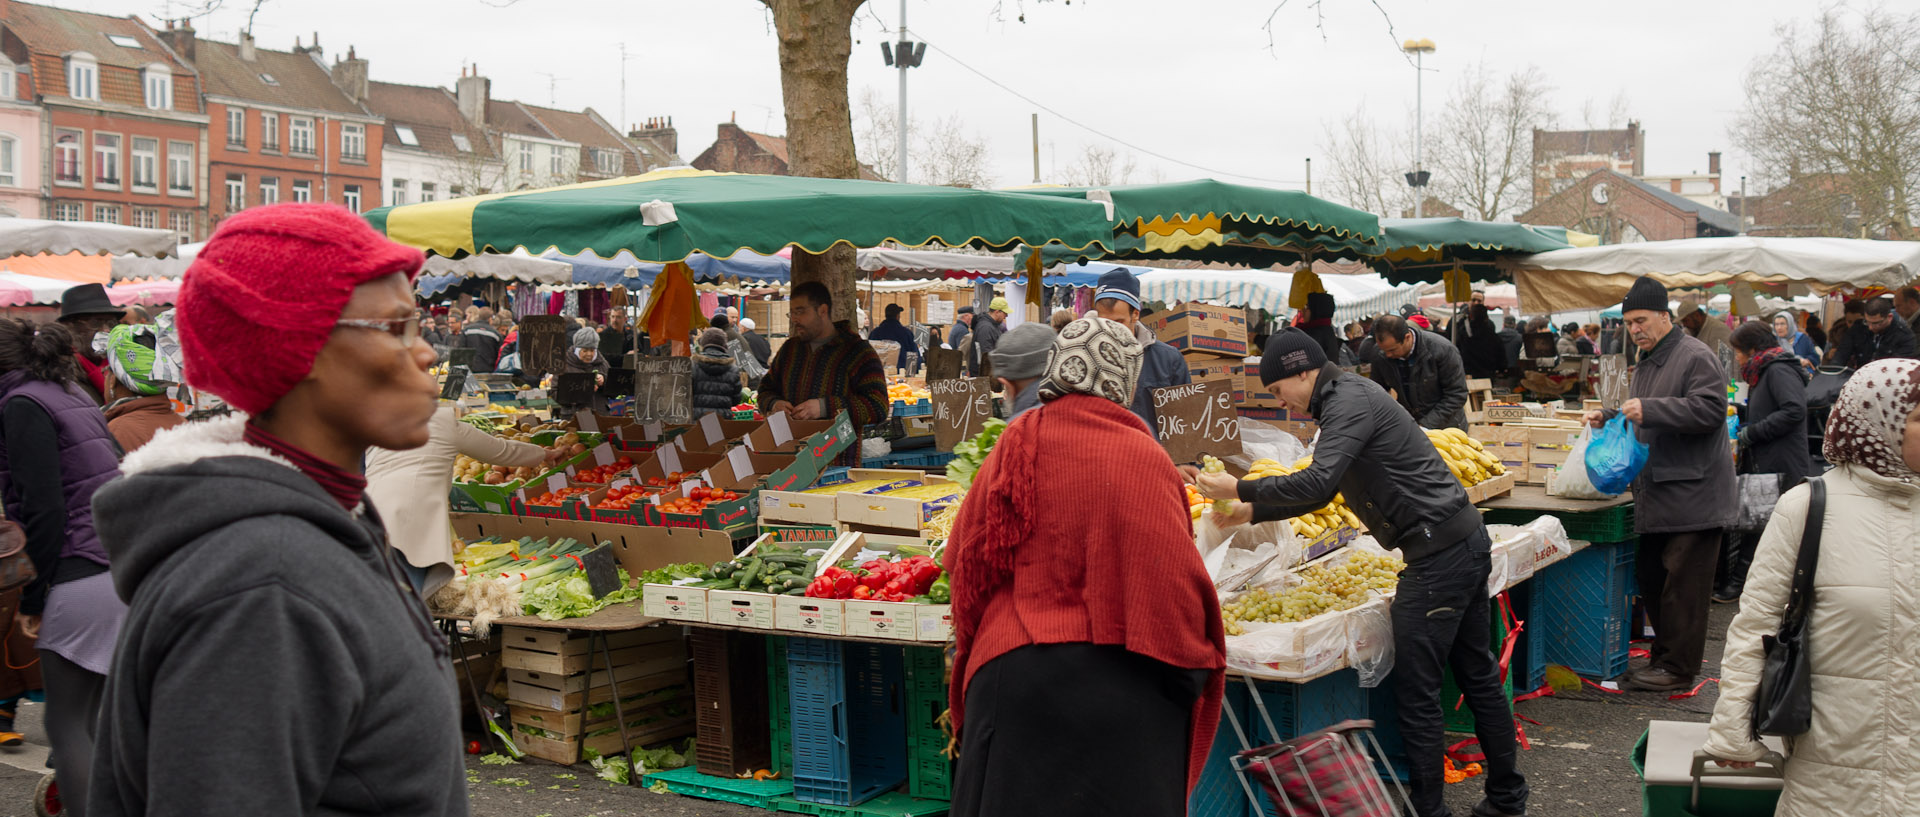 Marchand de légumes, au marché de Wazemmes, à Lille.